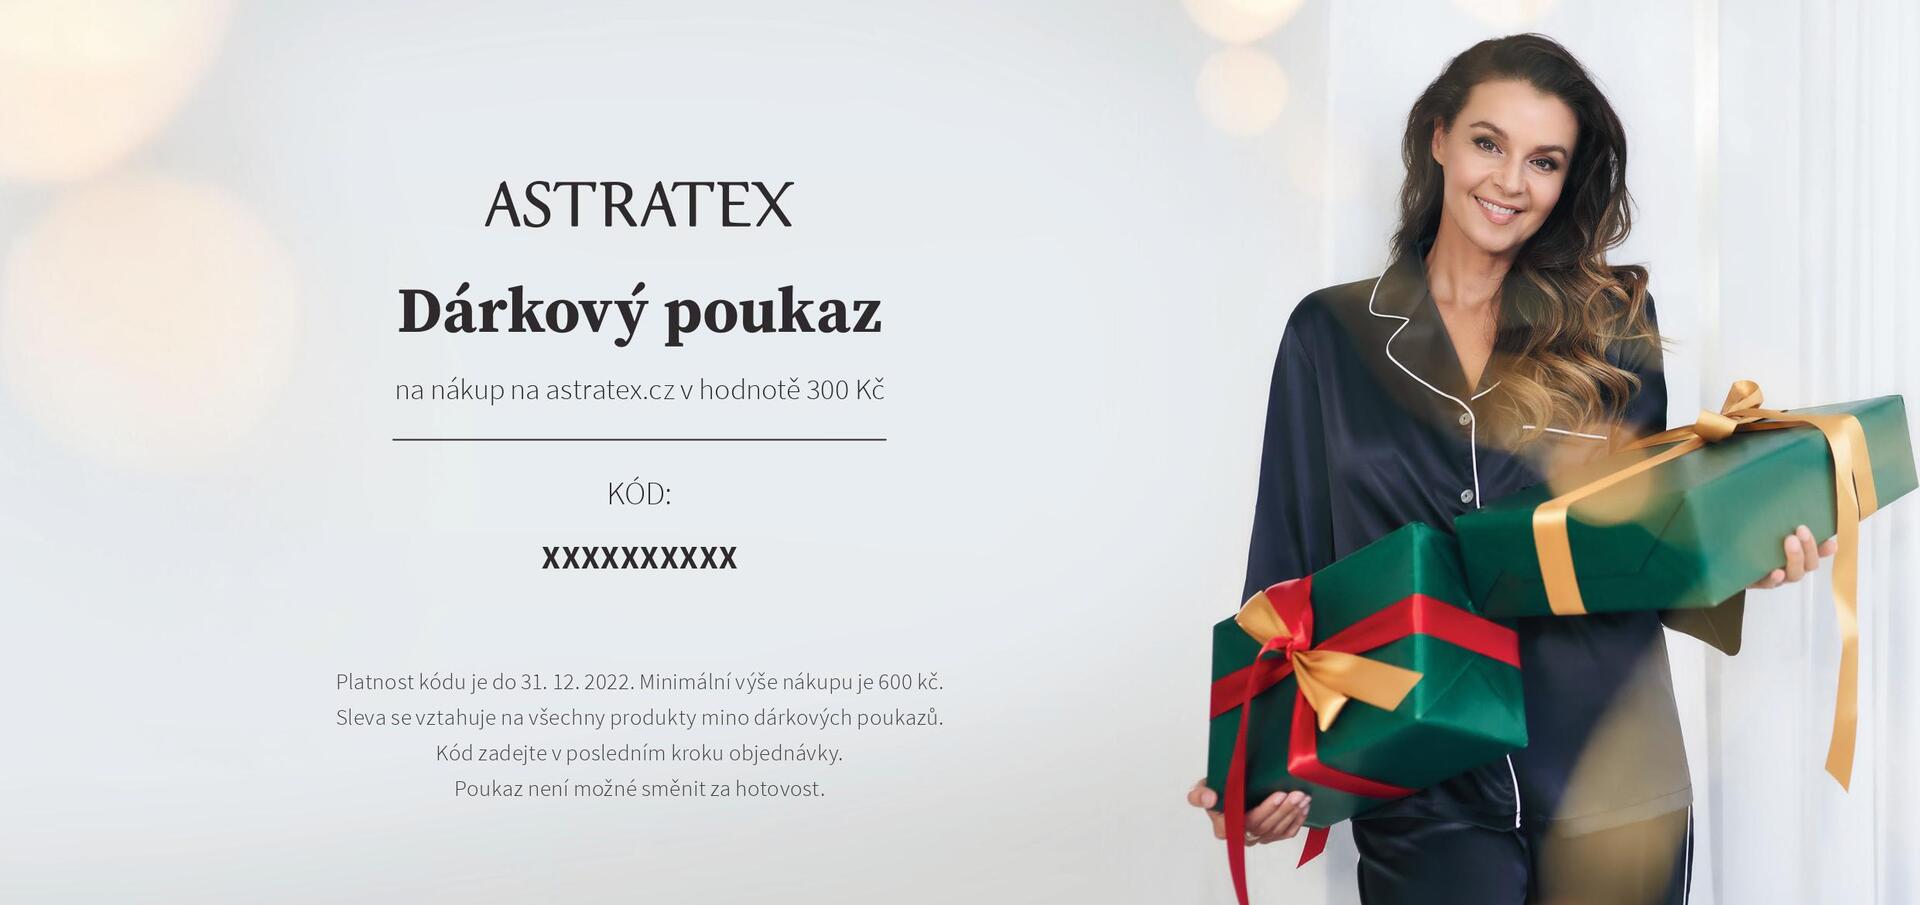 Dárkový poukaz na nákup na Astratex.cz v hodnotě 300 Kč